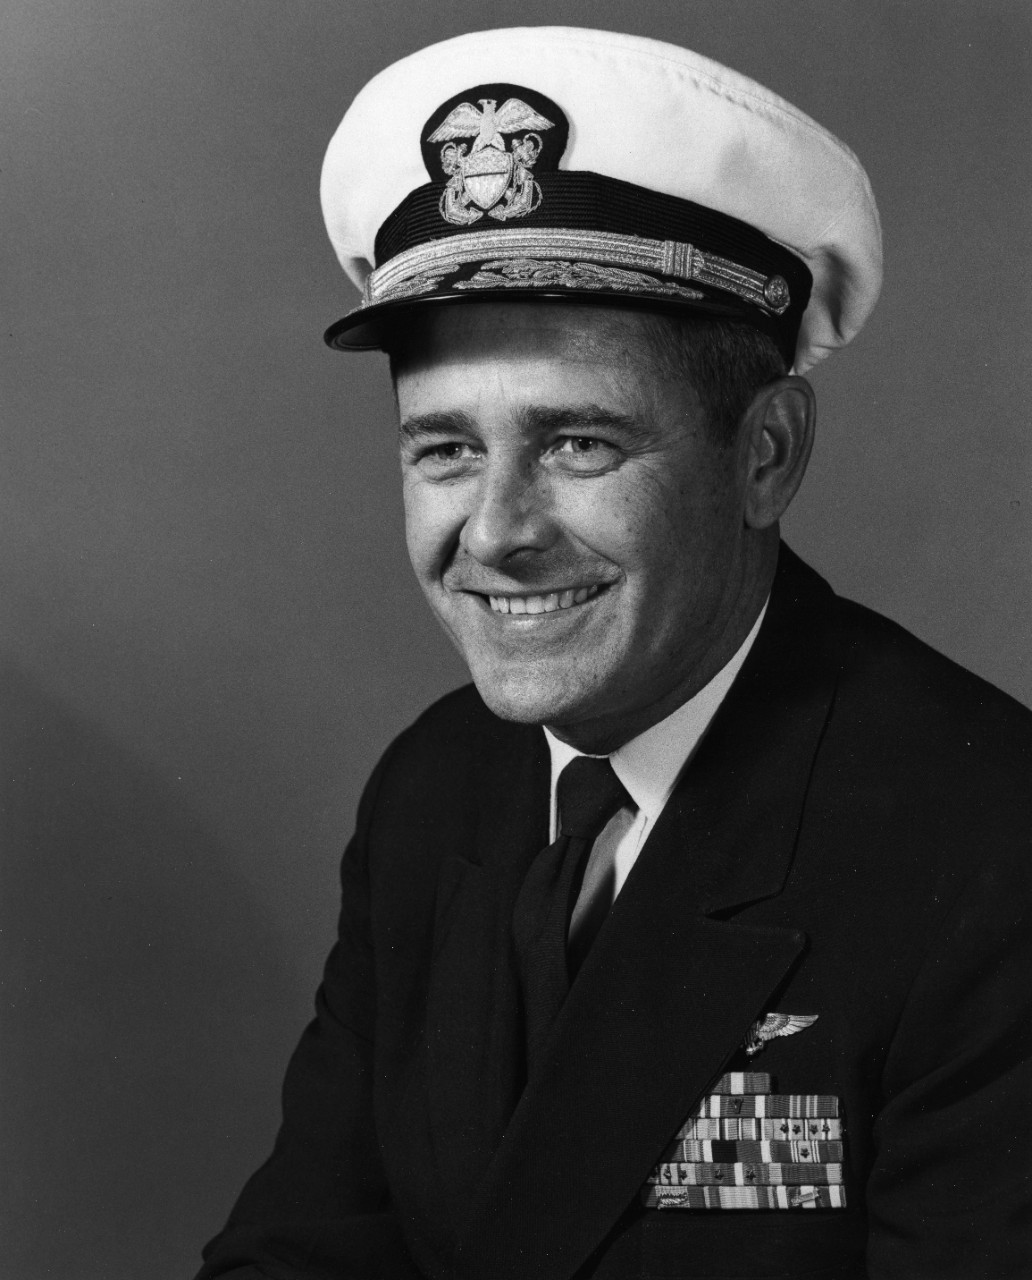 Rear Admiral William R. Flanagan, USN